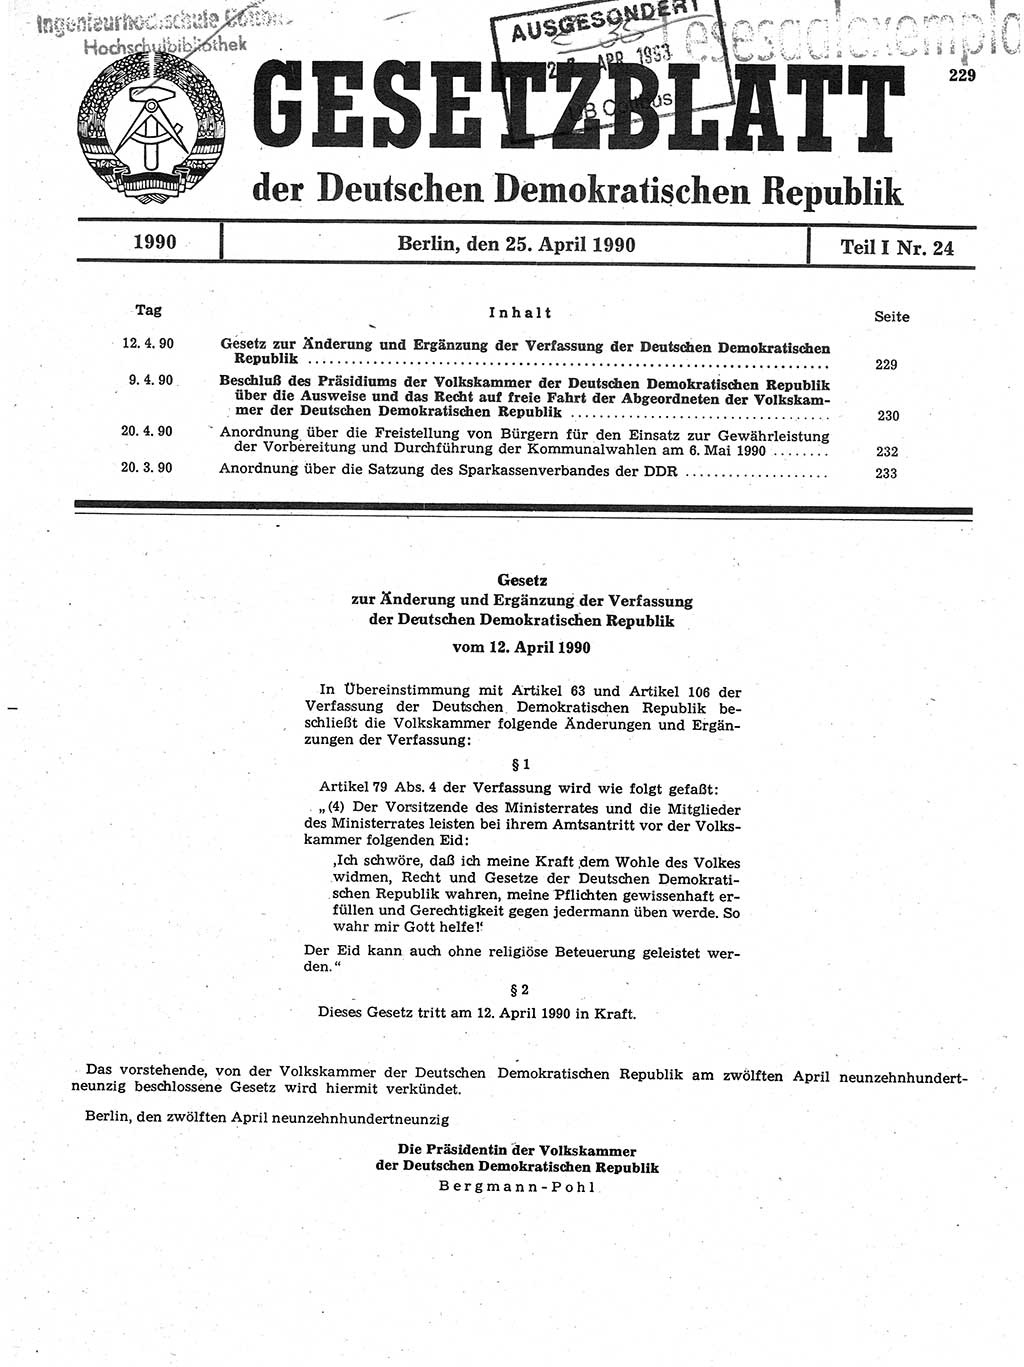 Gesetzblatt (GBl.) der Deutschen Demokratischen Republik (DDR) Teil Ⅰ 1990, Seite 229 (GBl. DDR Ⅰ 1990, S. 229)